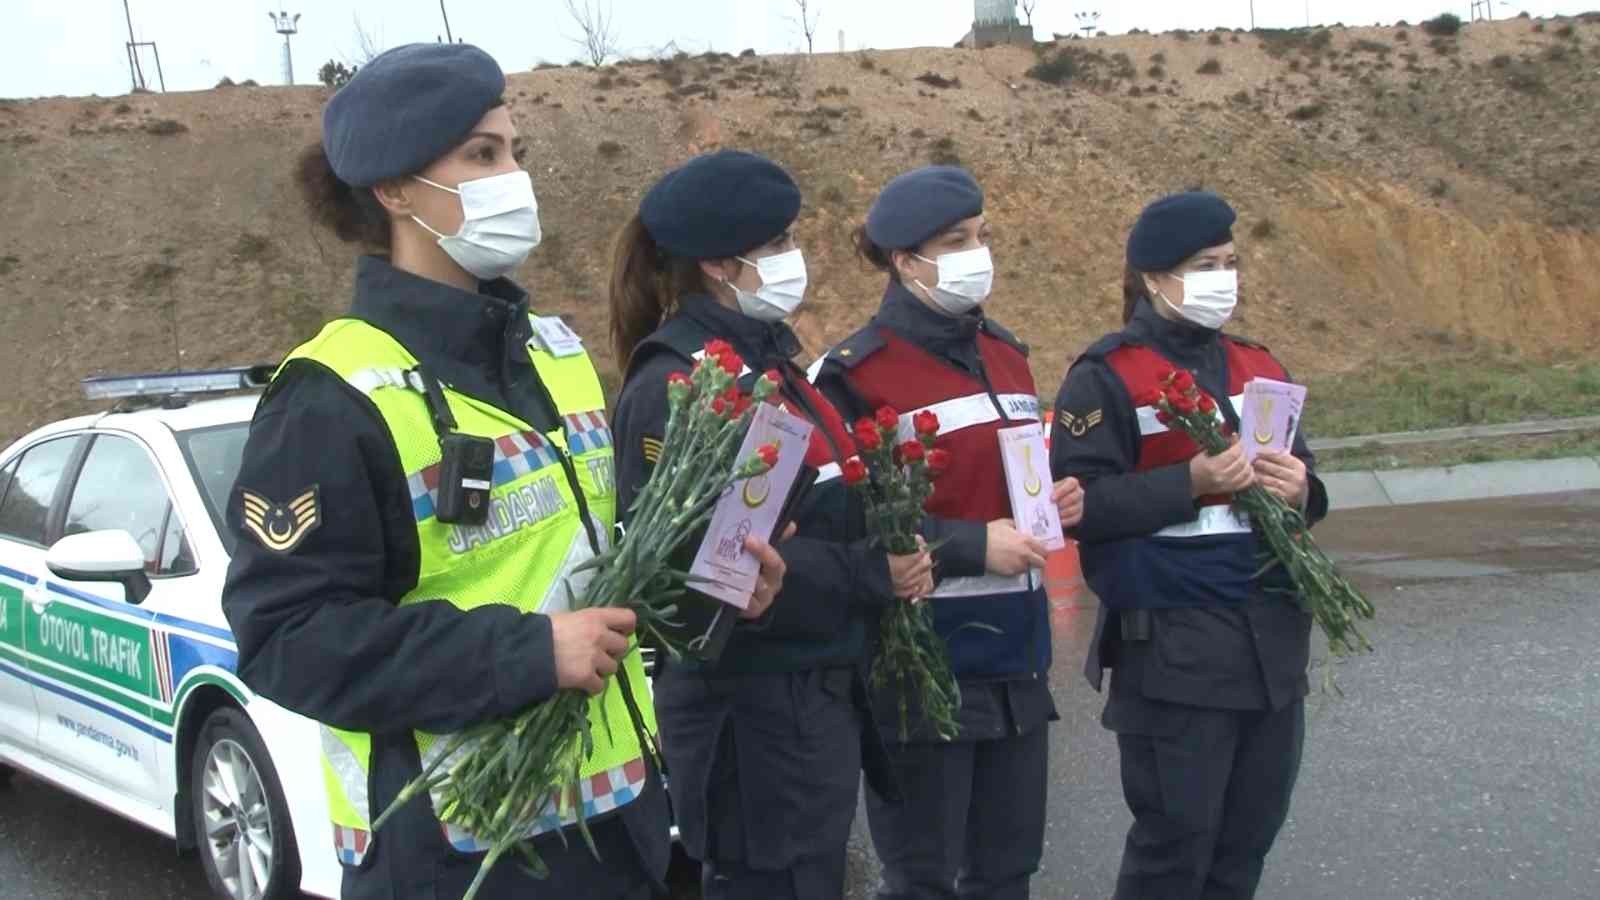 İstanbul İl Jandarma Komutanlığına bağlı ekipler, 8 Mart Dünya Kadınlar Günü nedeni ile Kuzey Marmara Otoyolu Fenertepe Gişeleri’nde yapılan ...